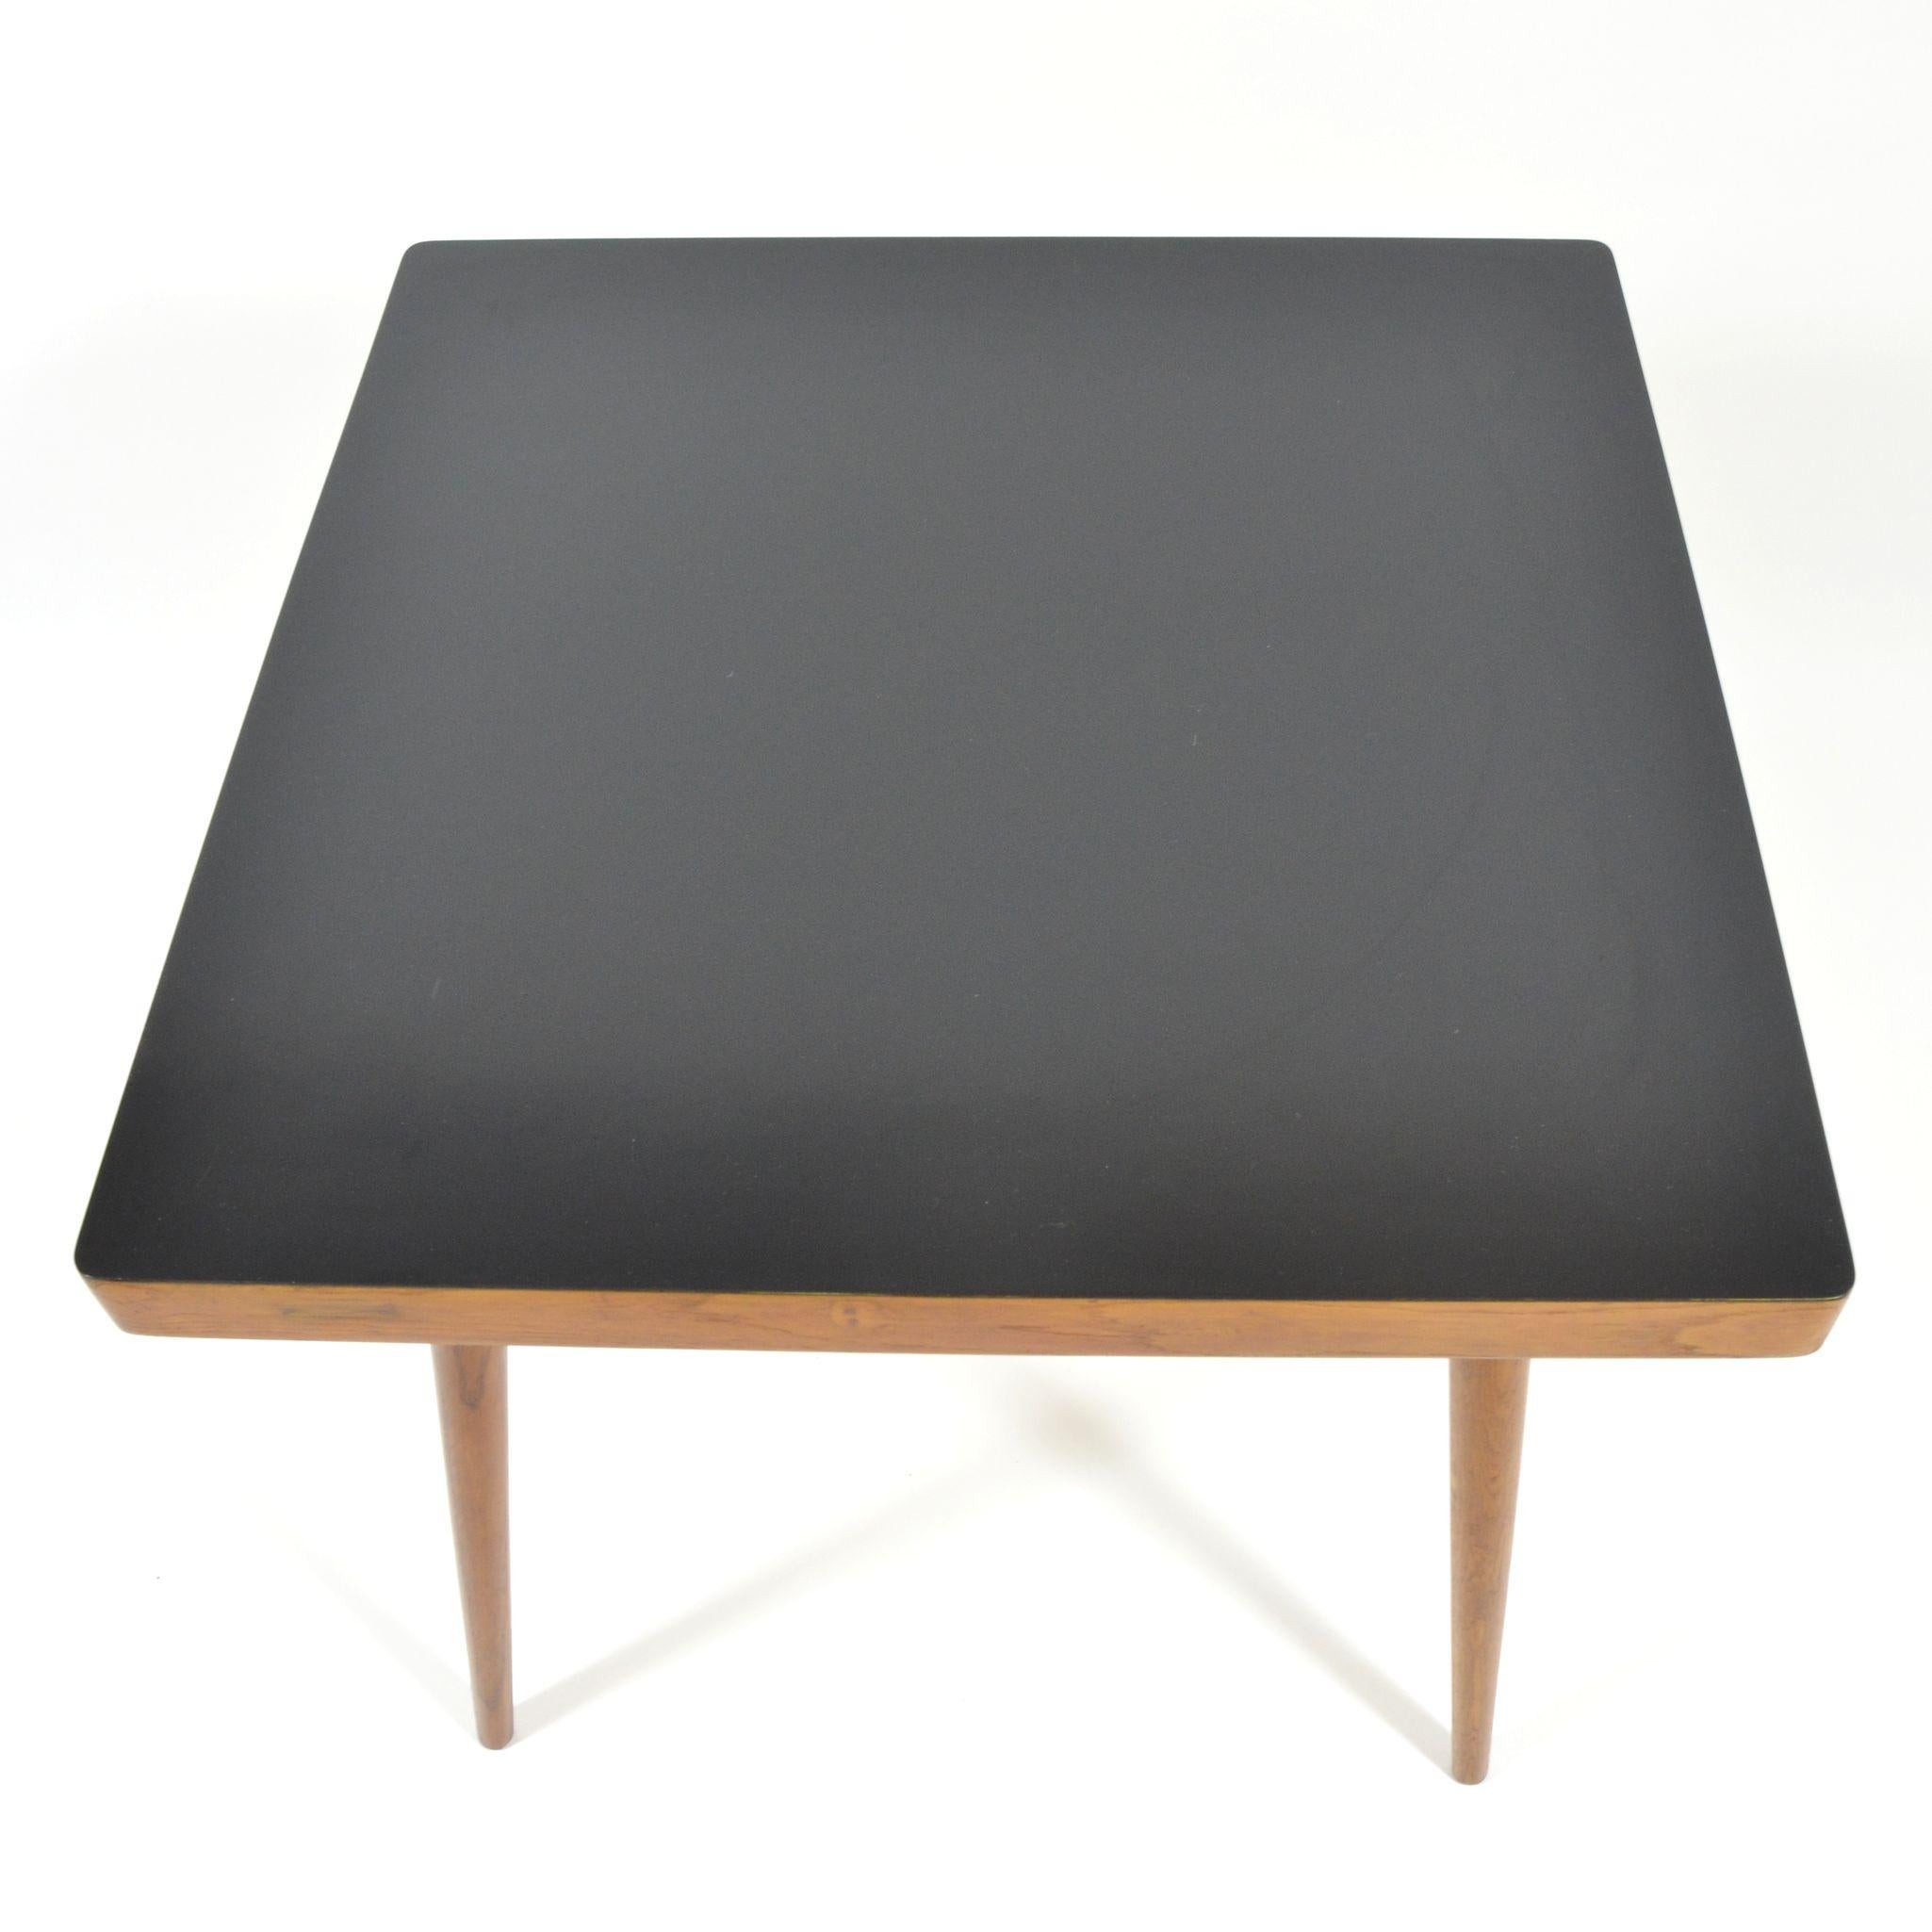 Formica Vintage Coffee Table with Black Varnished Desk, 1970s For Sale